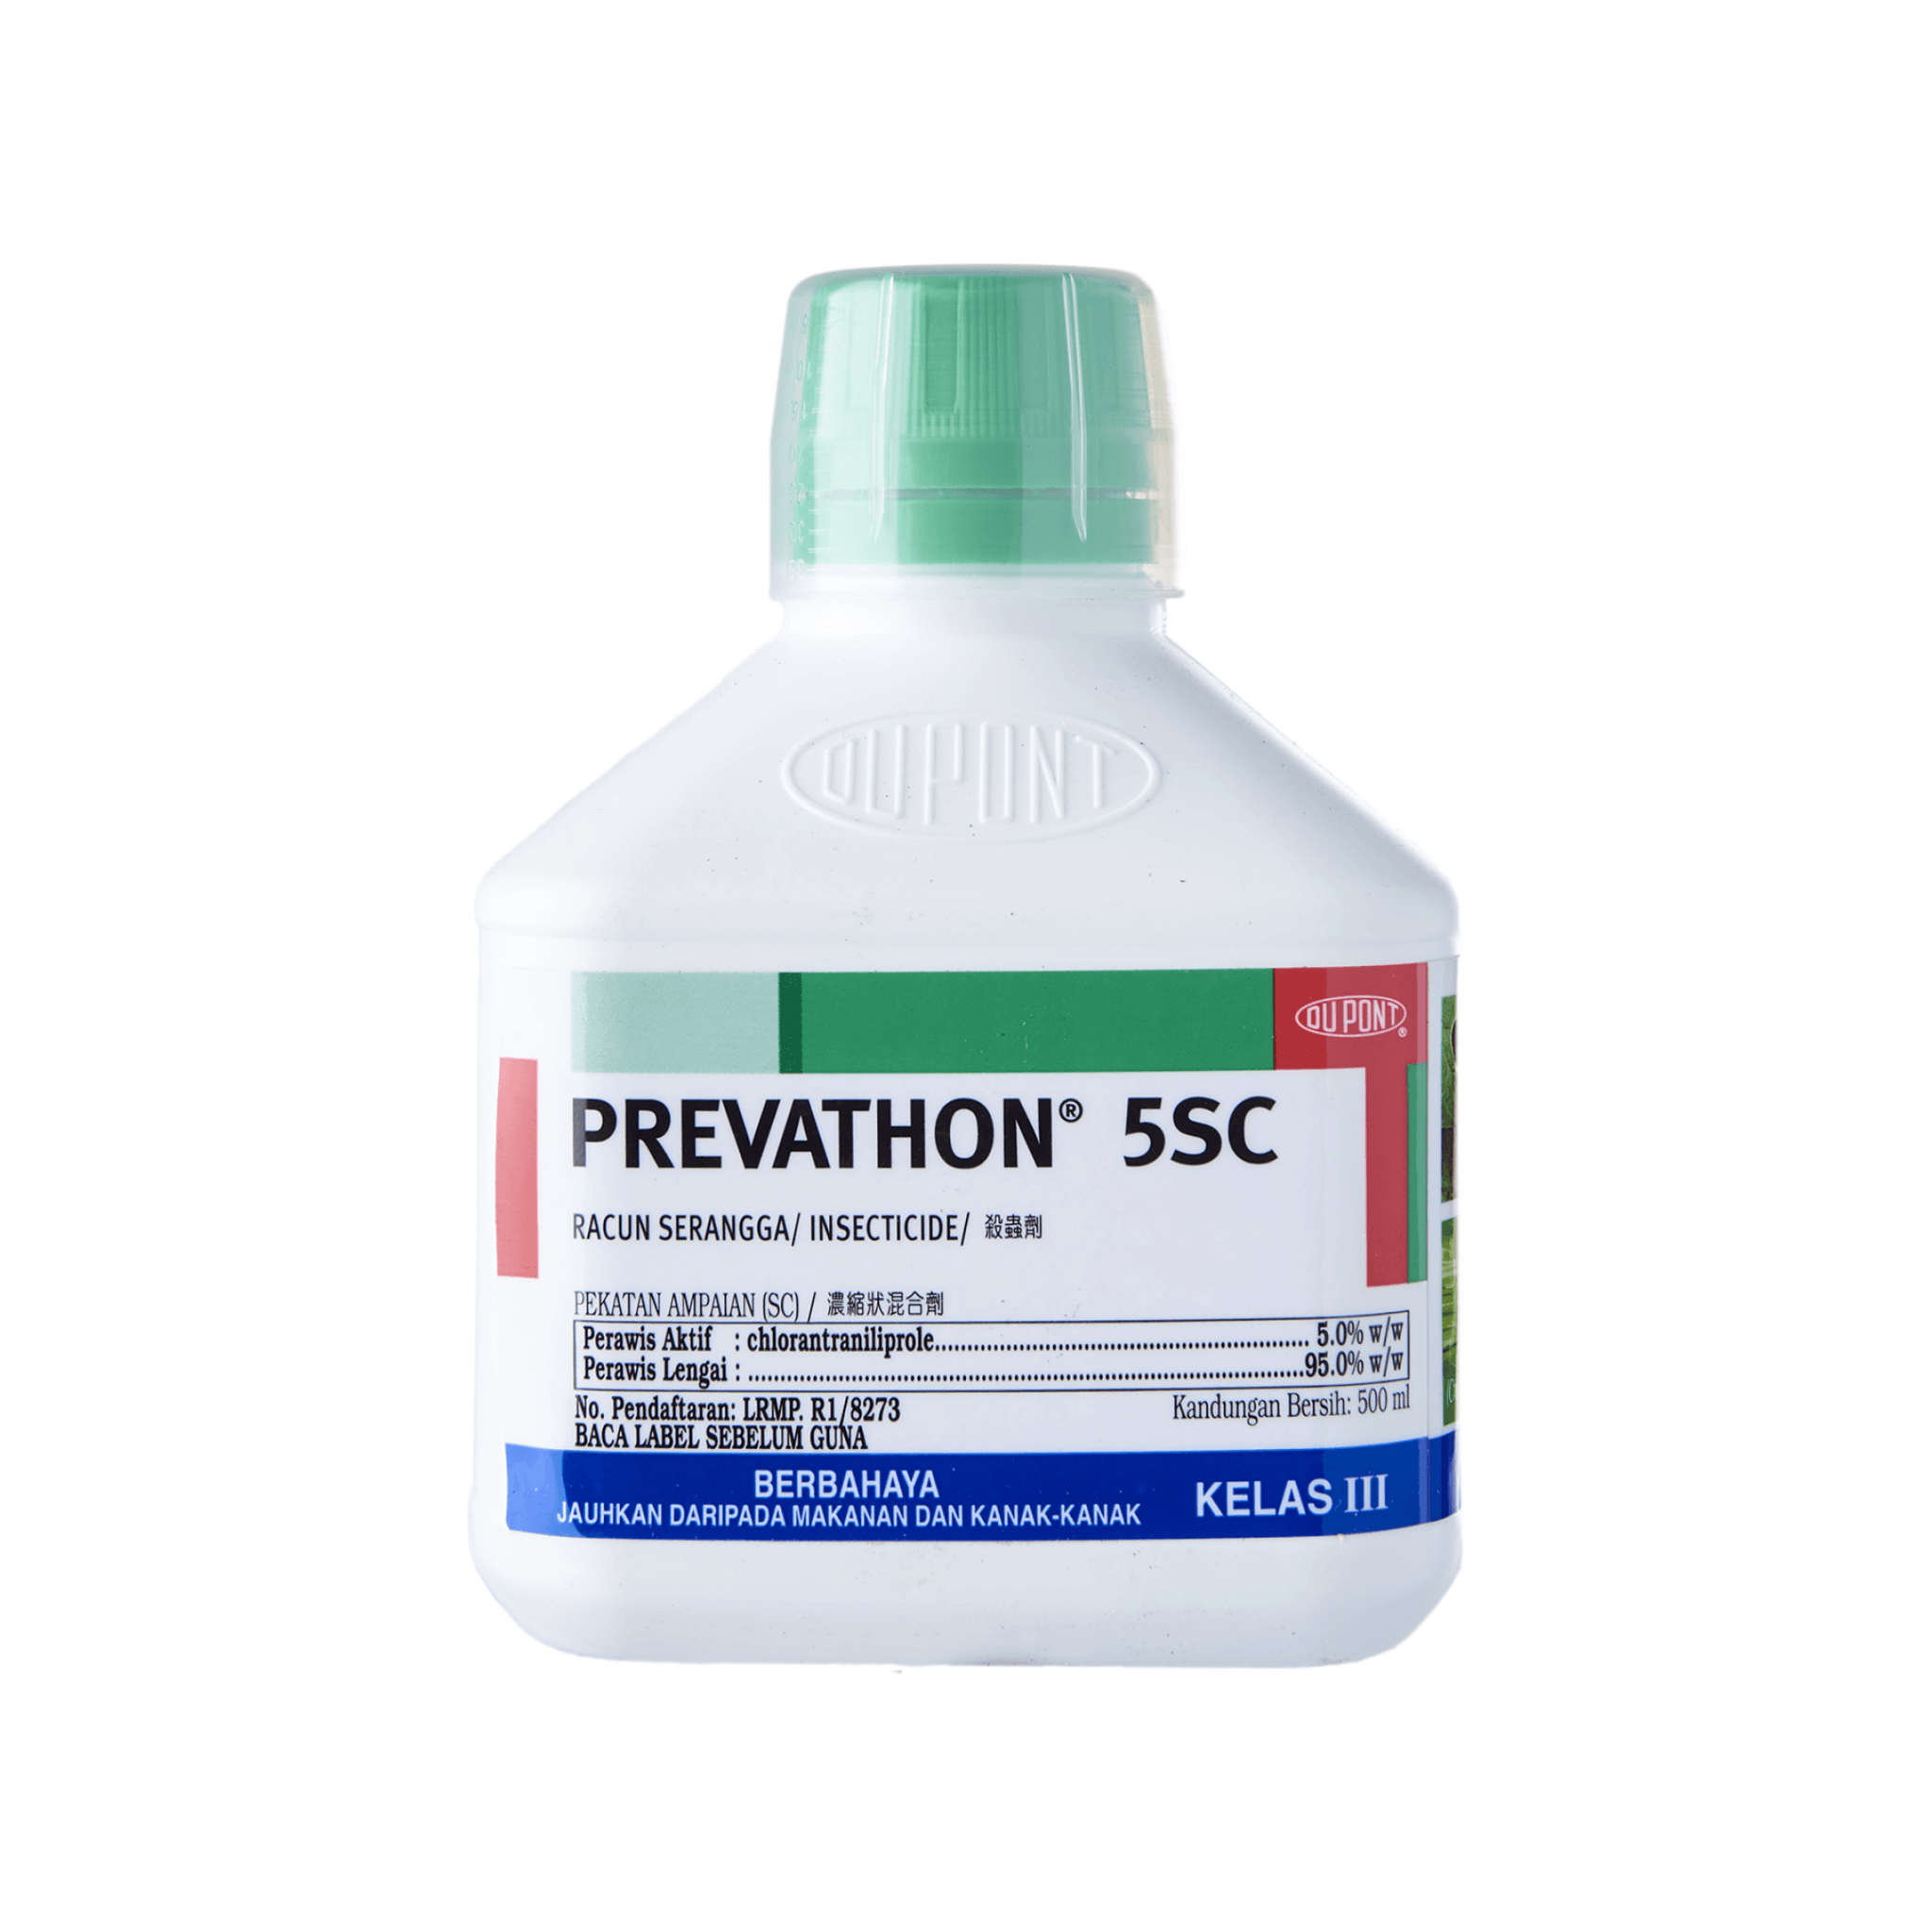 PREVATHON Insecticide Racun Serangga 5SC - 500ml - Doktor Ladang